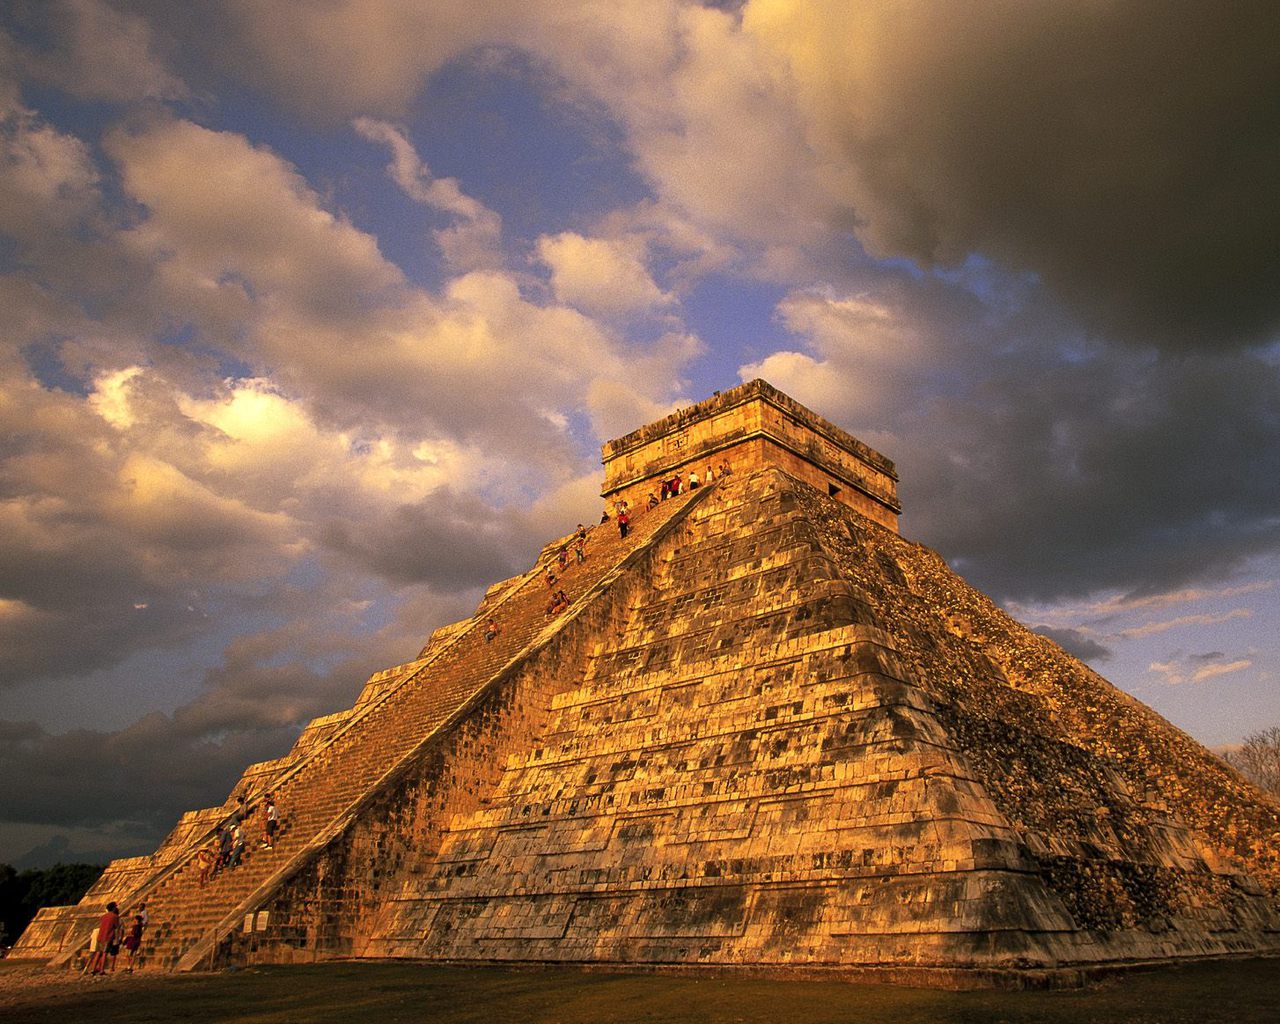 http://2.bp.blogspot.com/-dnCW5sWIqM4/TsUJG1bchRI/AAAAAAAAFCY/yYlLdes8iq8/s1600/Ancient-Mayan-Ruins-Chichen-Itza-Mexico.jpg